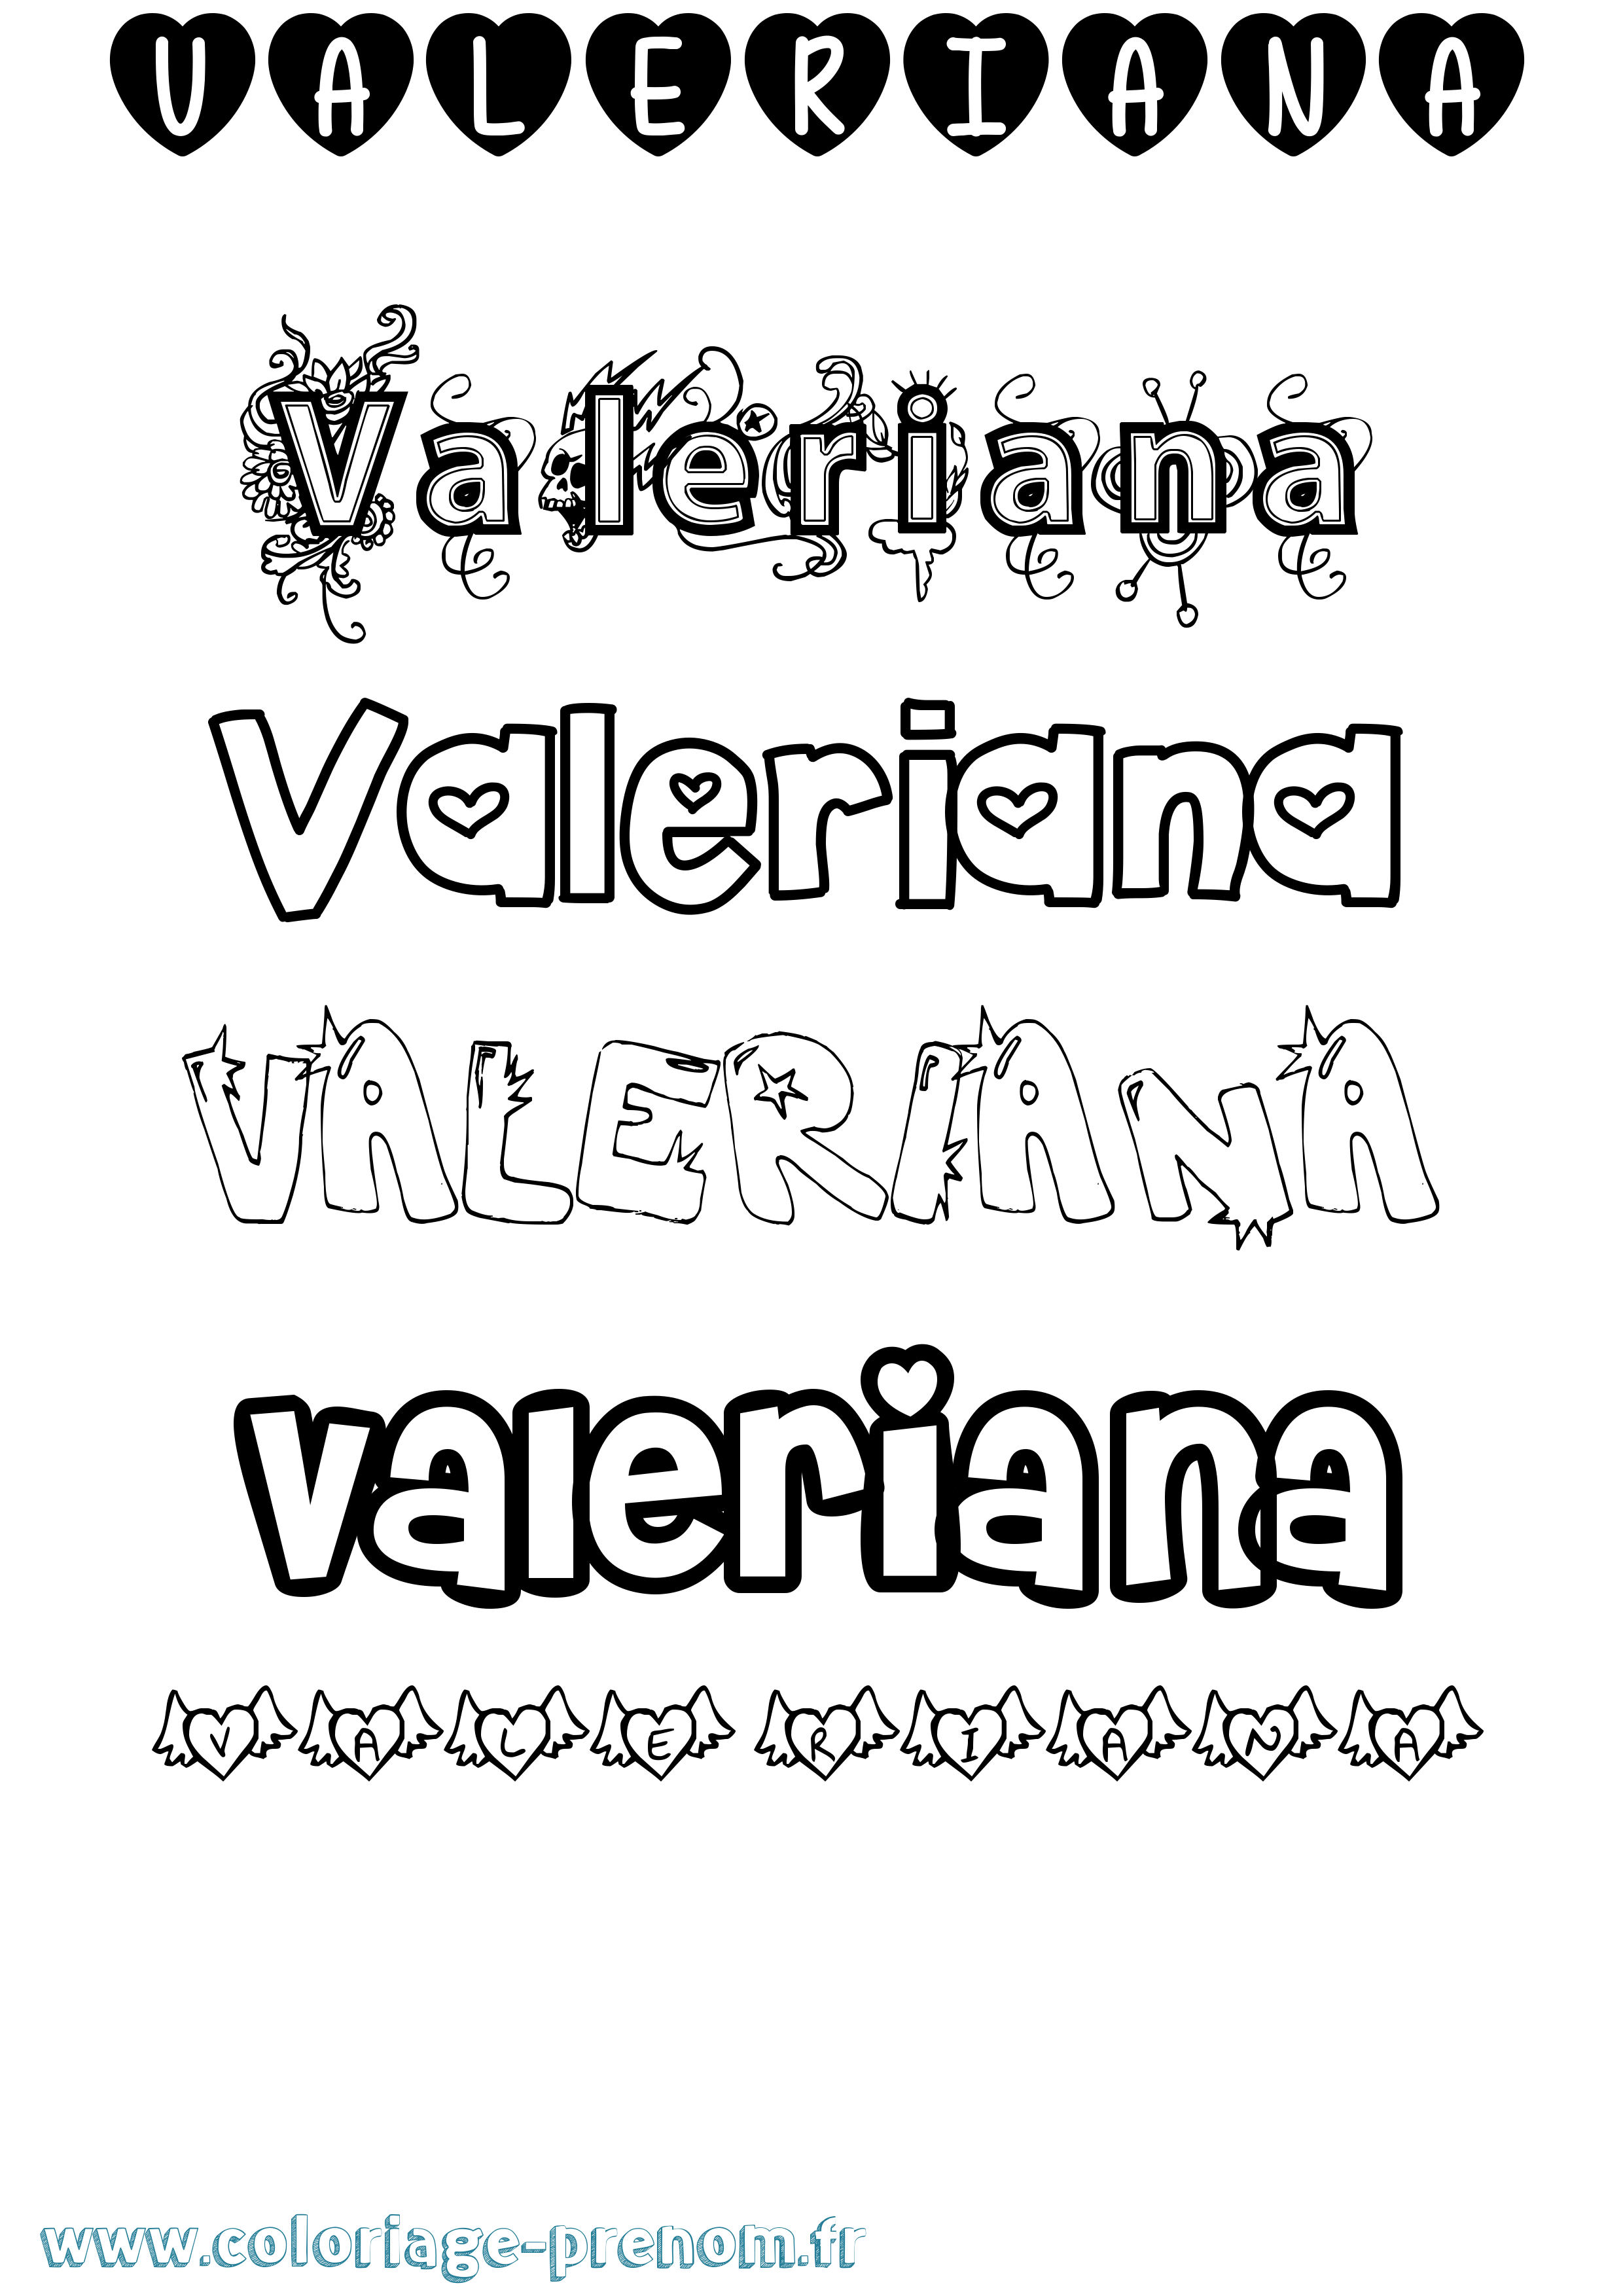 Coloriage prénom Valeriana Girly